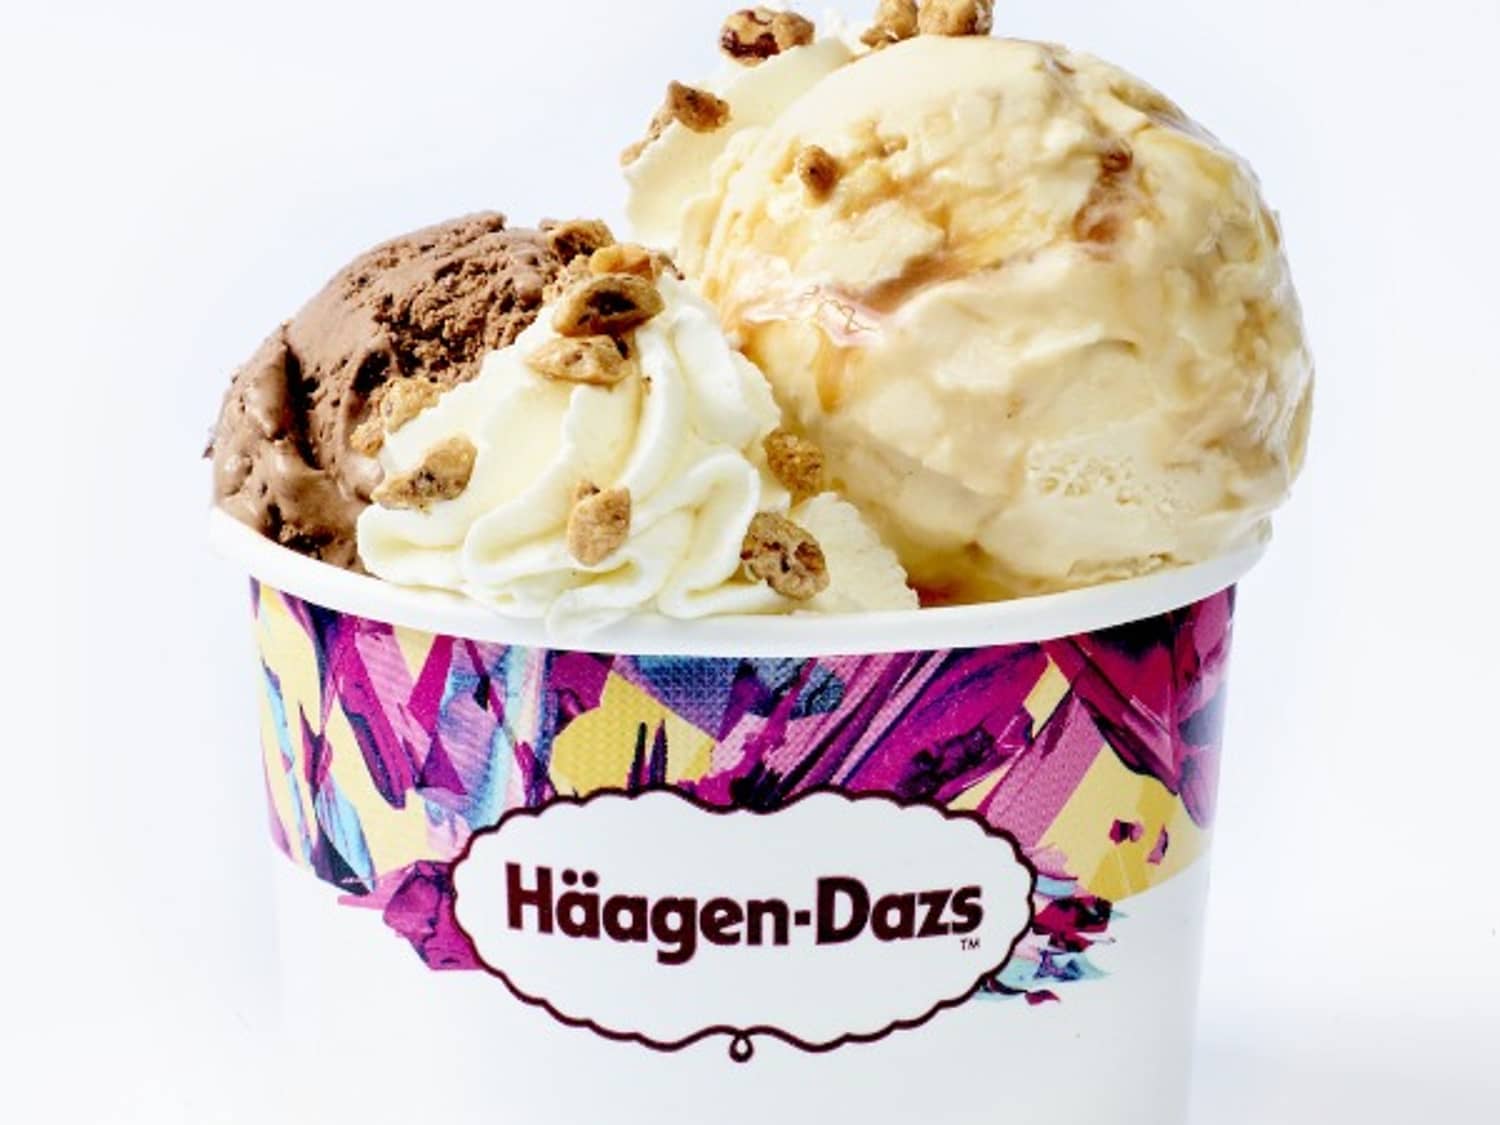 Haagen-Dazs – Brands we – - General Food Mills make